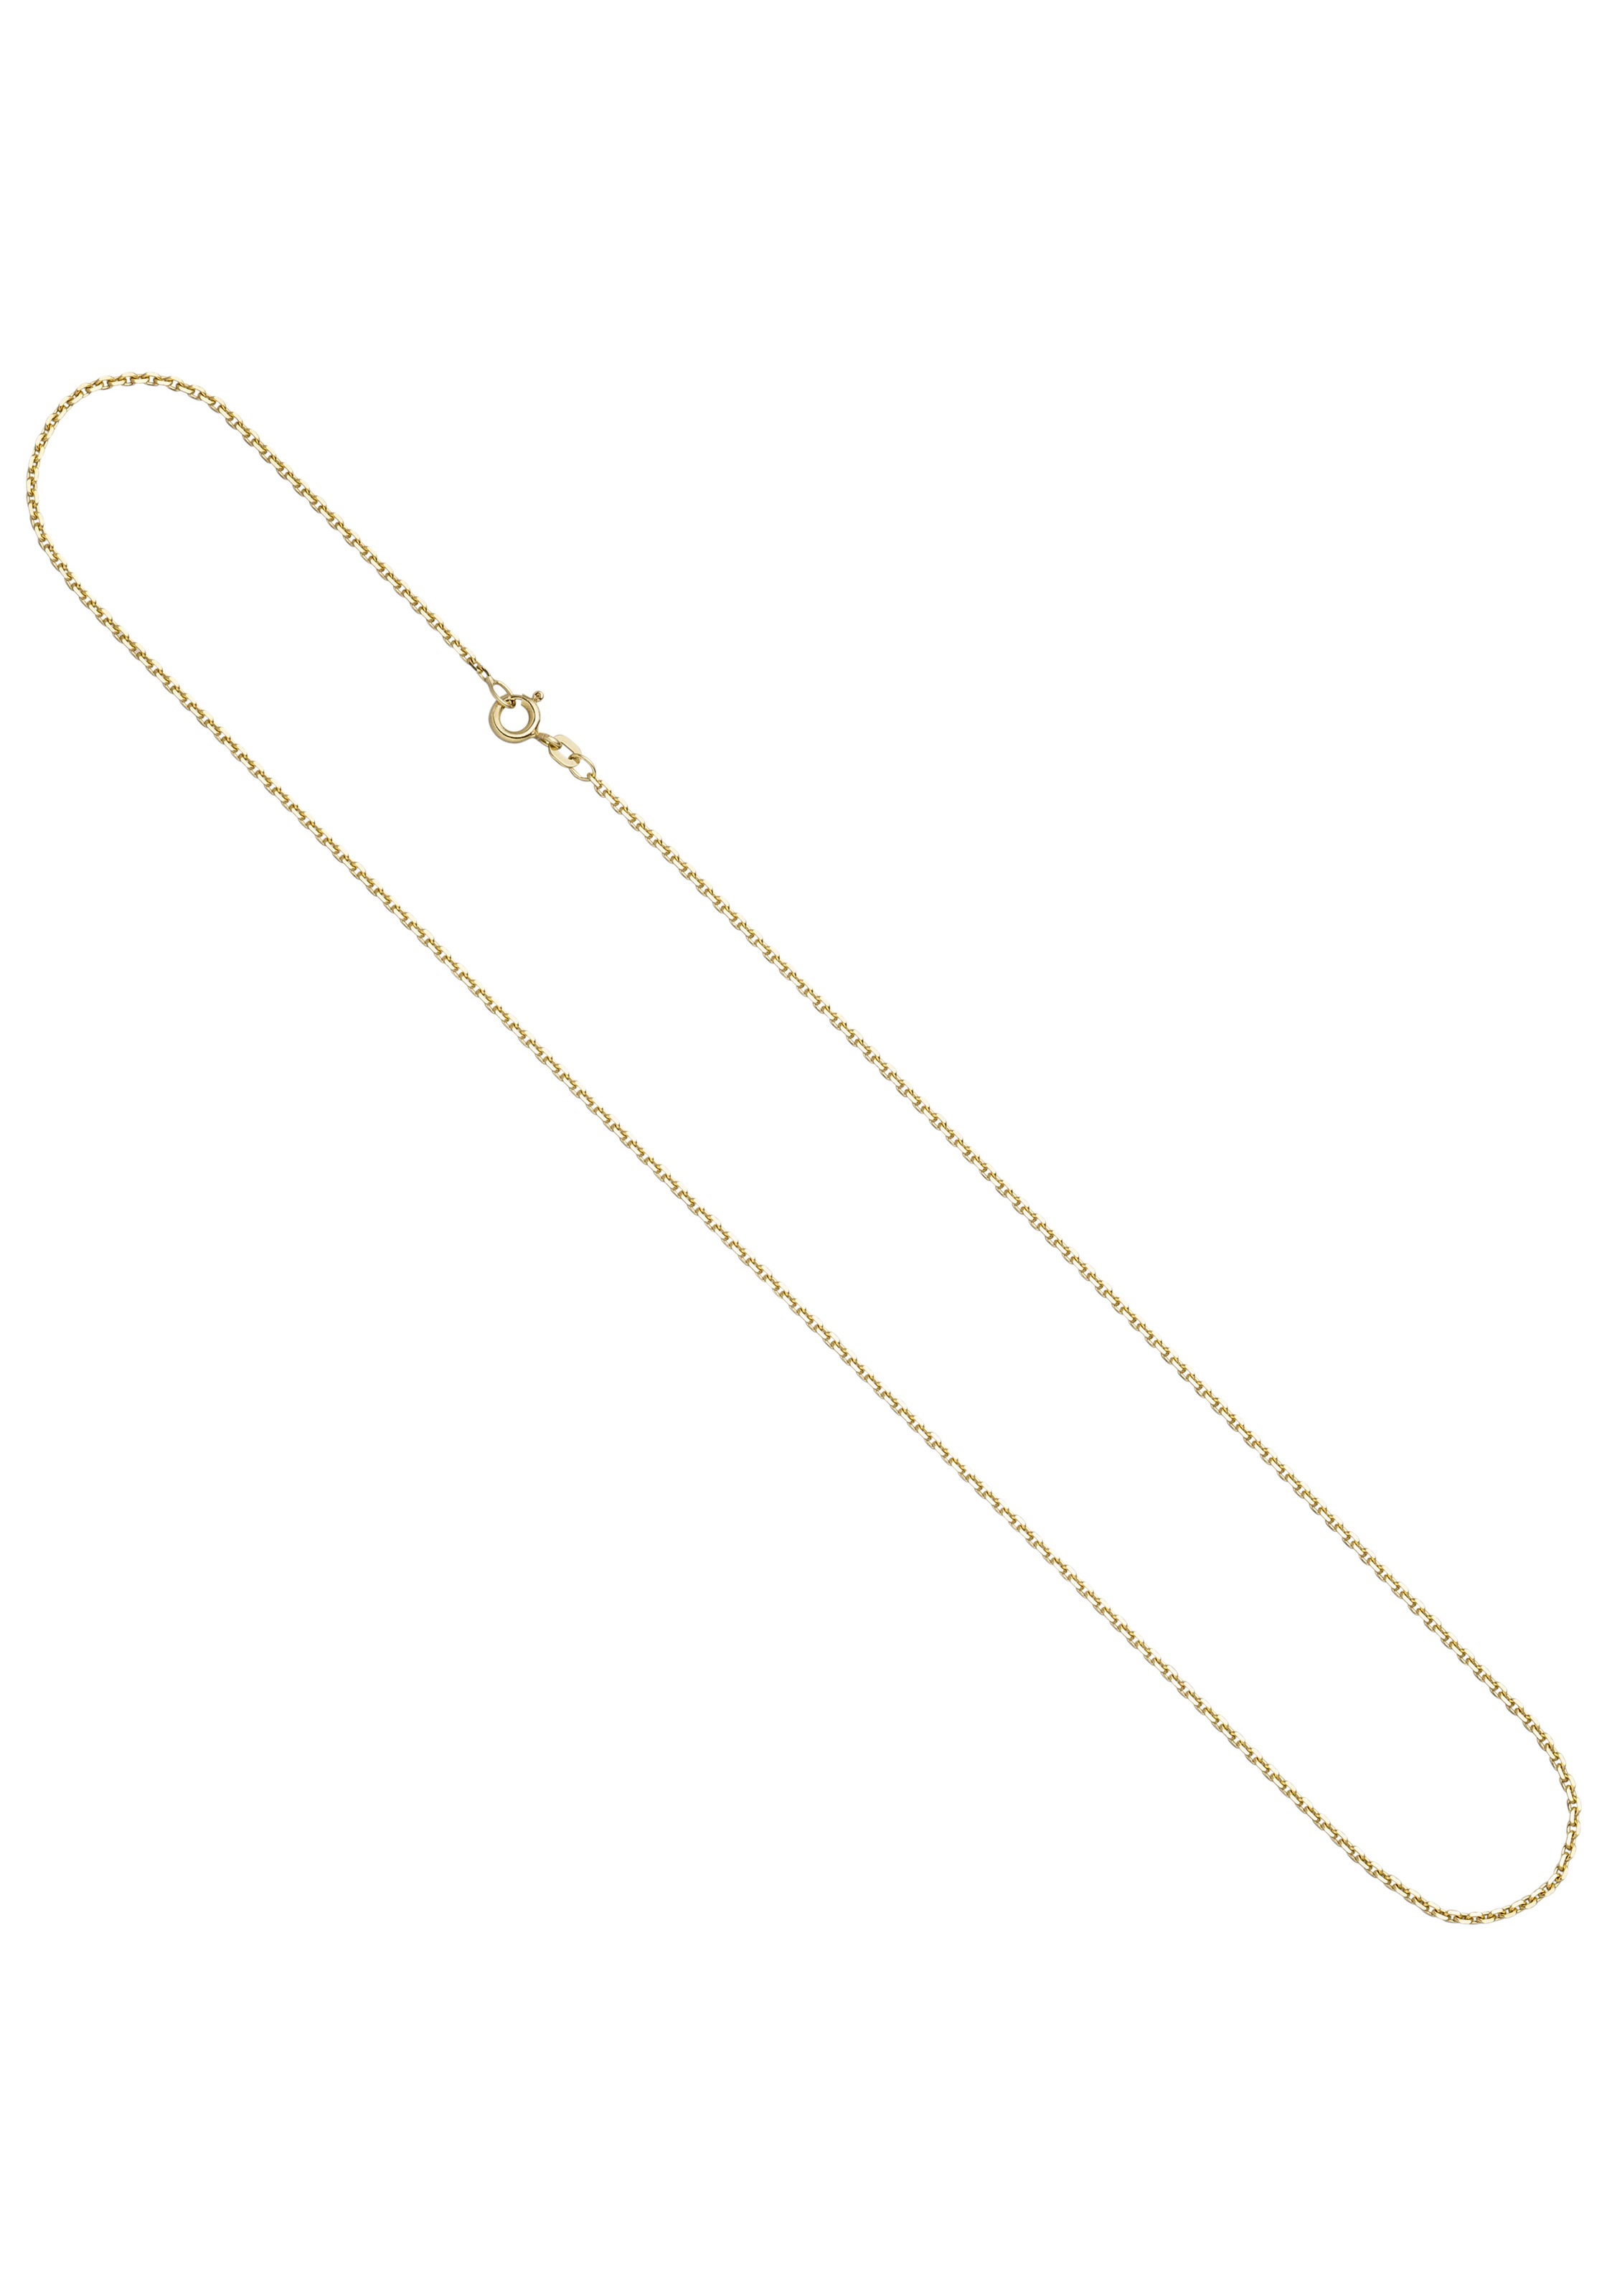 [Zu einem erstaunlichen Preis] JOBO Goldkette Ankerkette 585 1 36 Gold cm mm 2